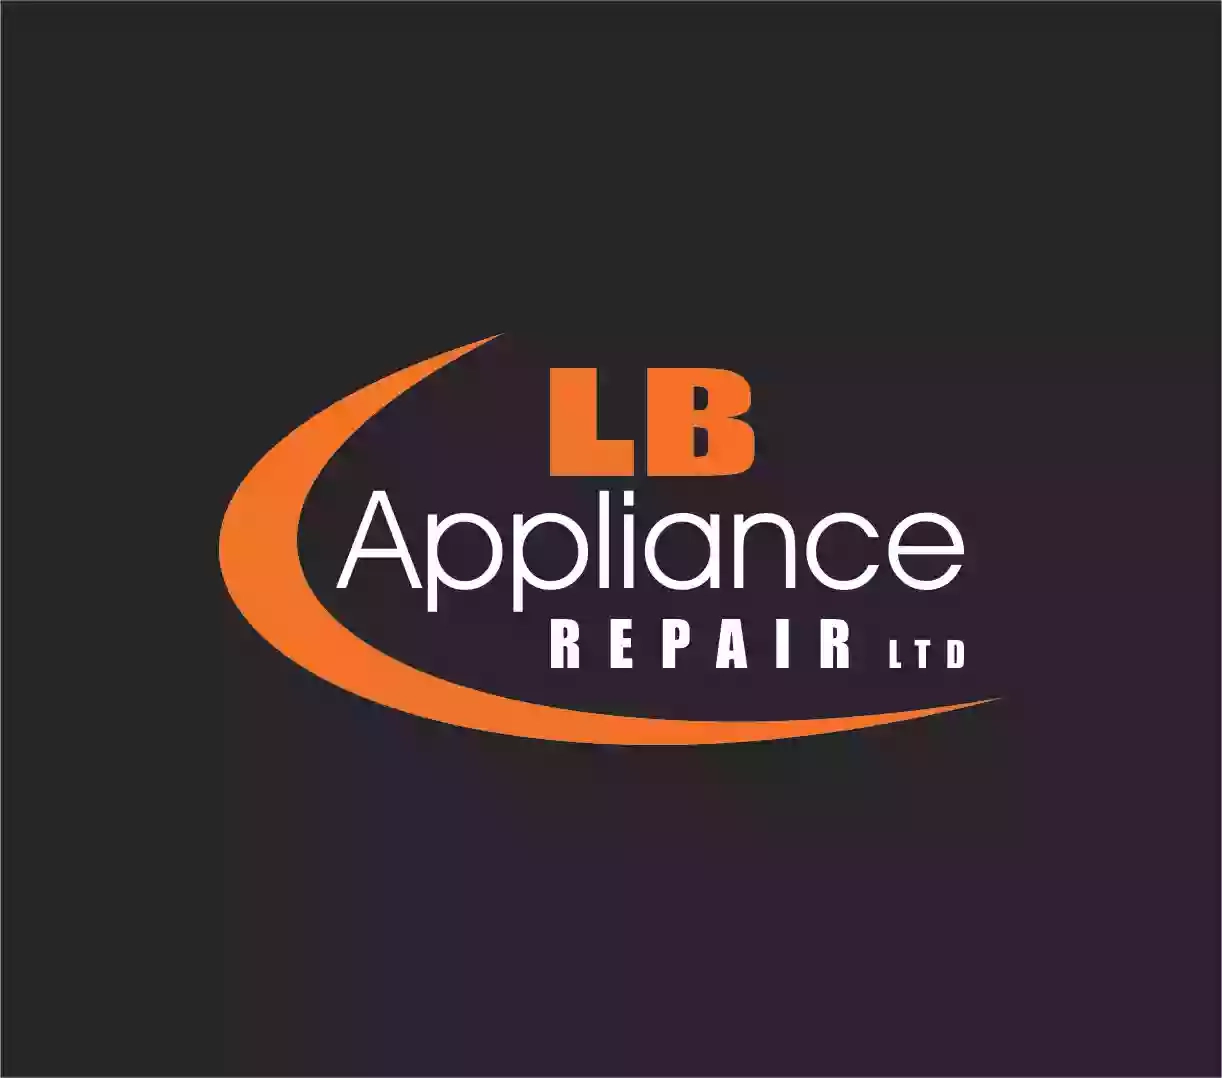 L B Appliance Repair Ltd.